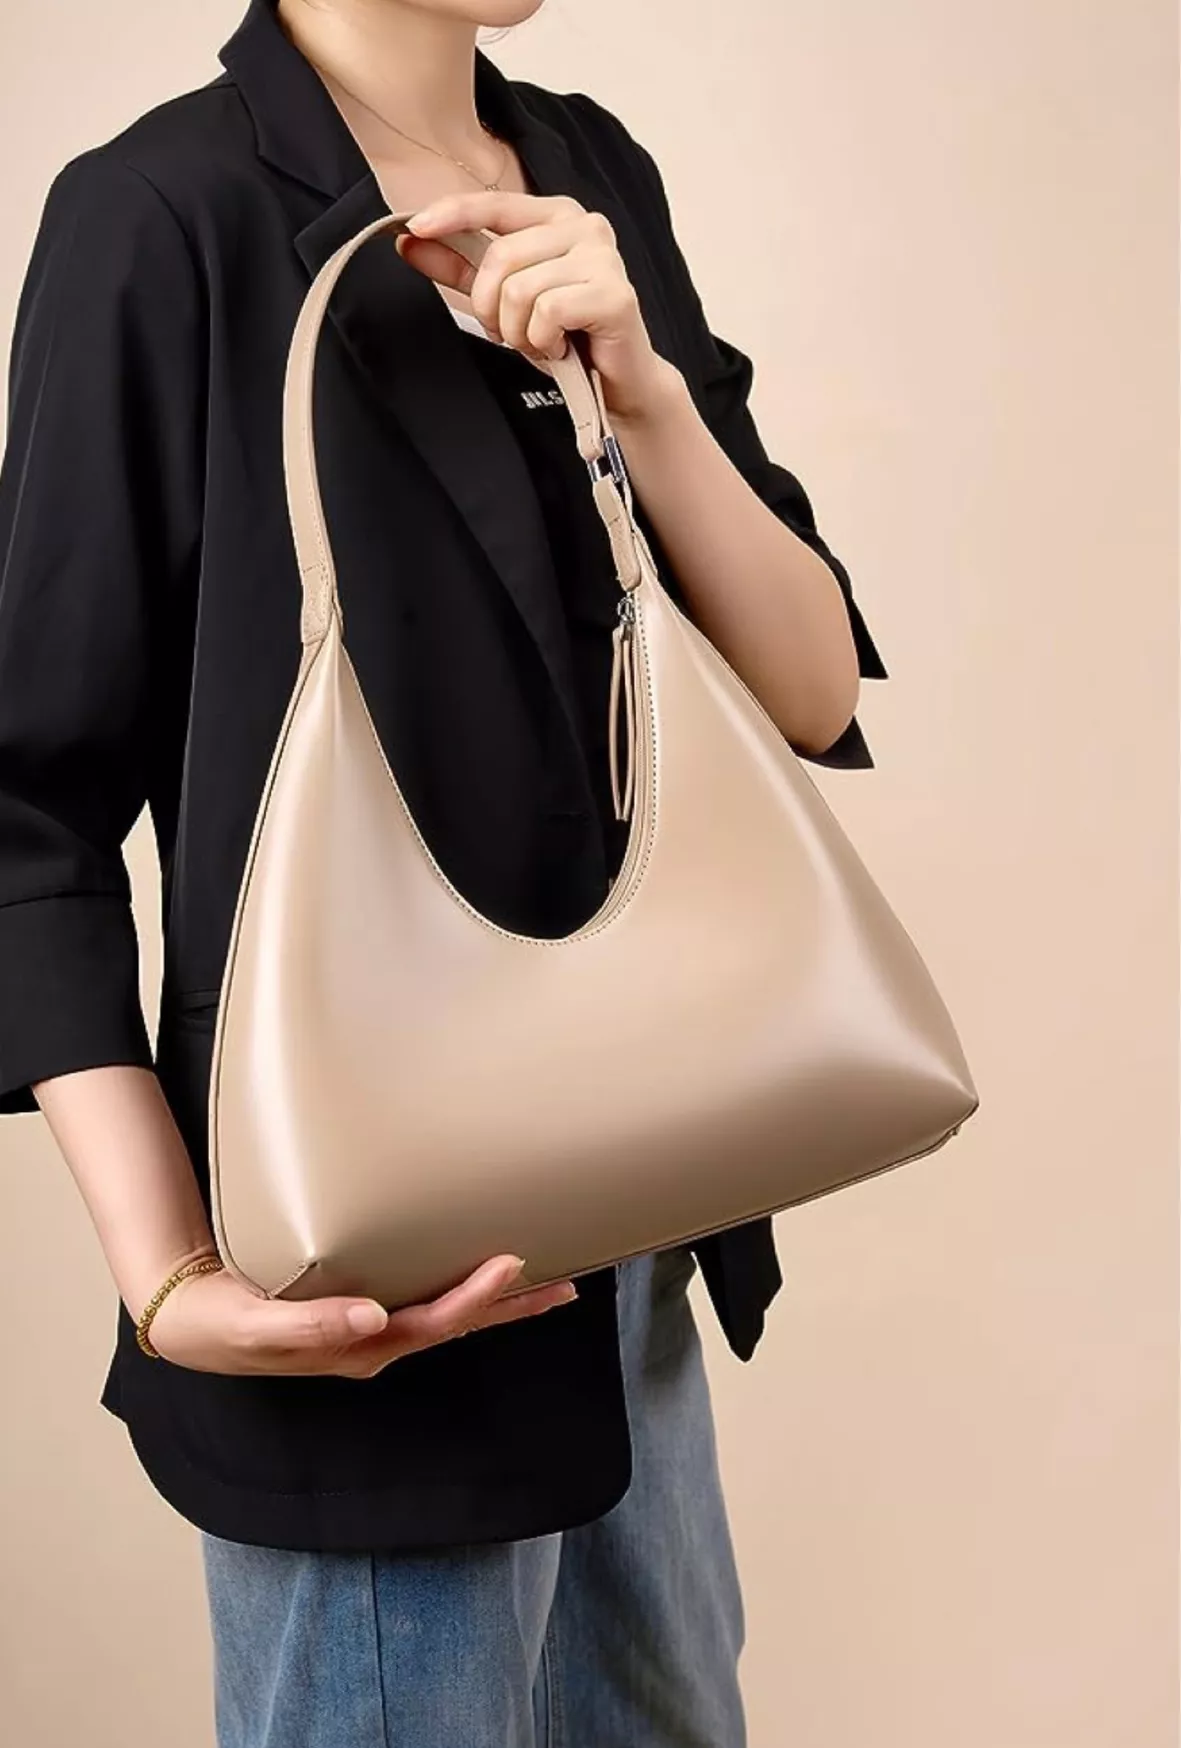 Oversized Hobo Shoulder Bag curated on LTK